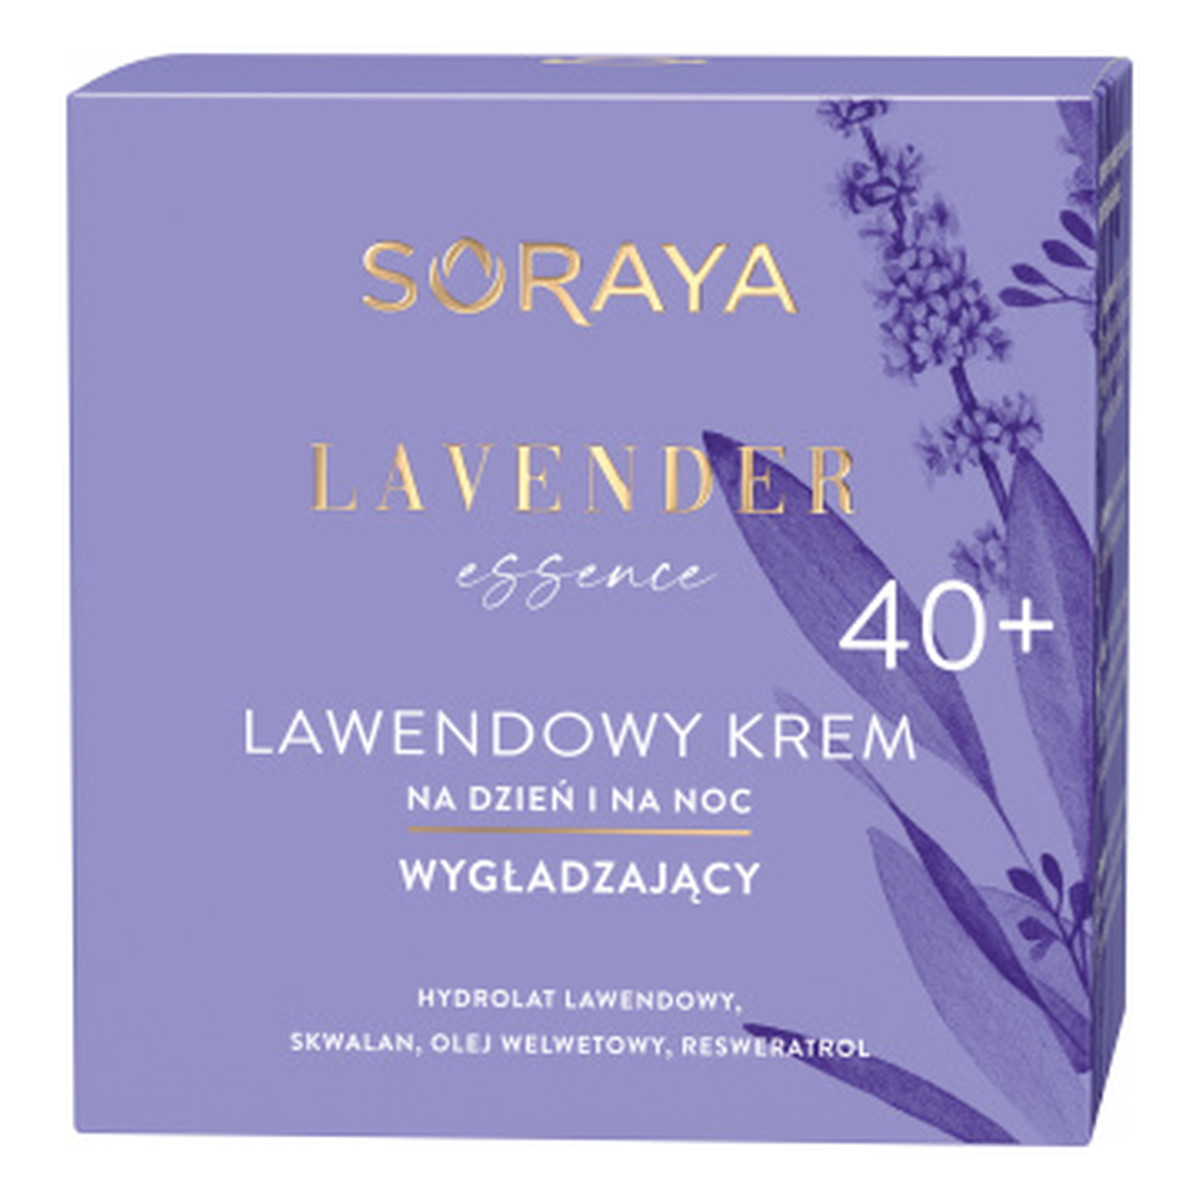 Soraya Lavender Essence 40+ lawendowy Krem wygładzający na dzień i na noc 50ml